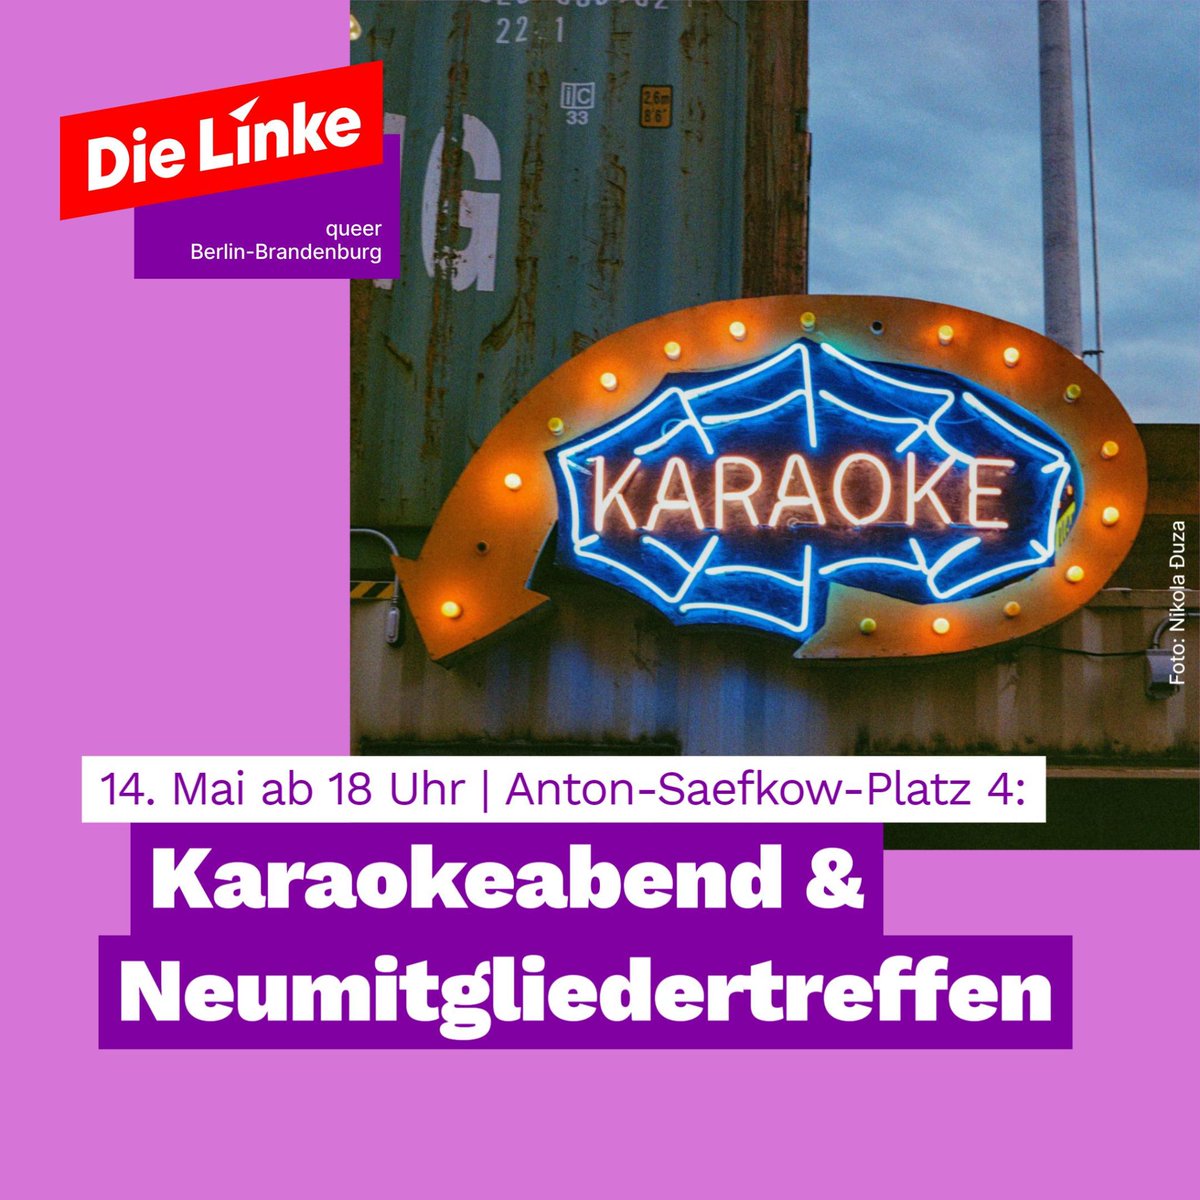 Große Freude: Kommenden Dienstag findet das queere Neumitglieder-Karaoke von @dielinke_queer Berlin-Brandenburg in Lichtenberg statt! Mit dabei sind u.a. @klauslederer und @CEungeschminkt. Singet zahlreich! 🎤 🥰🏳️‍🌈🏳️‍⚧️